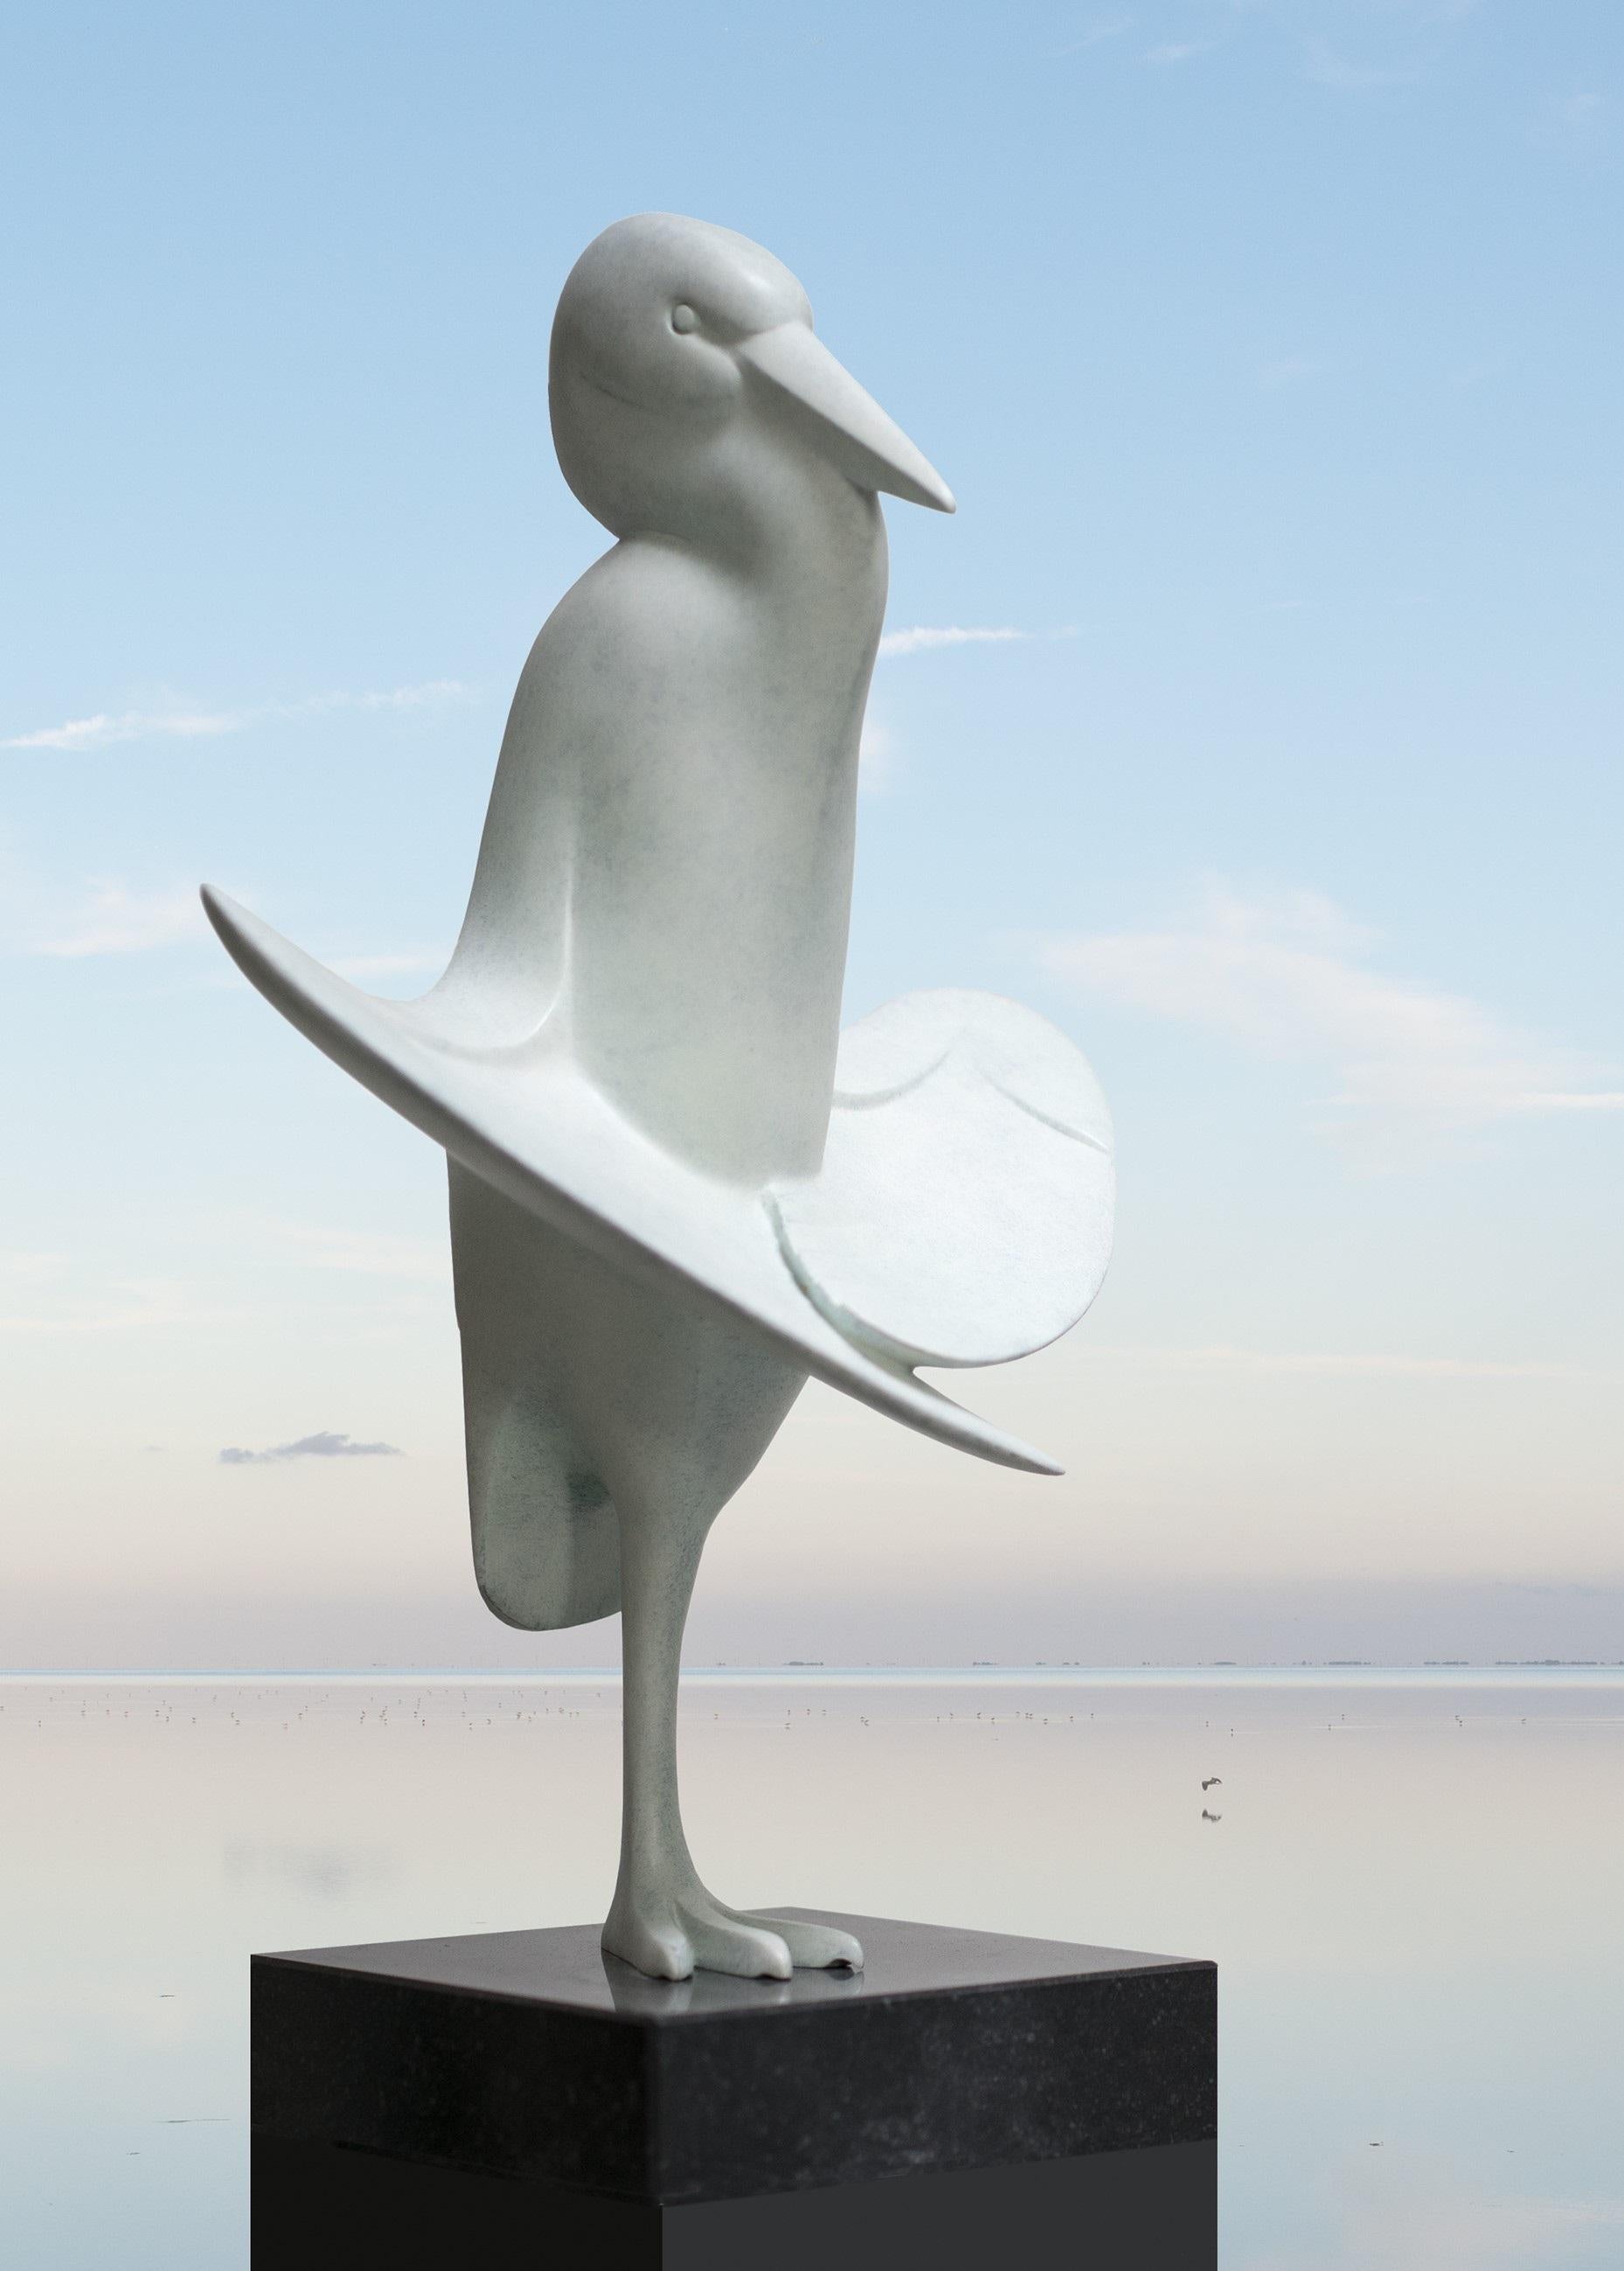 Reiger In De Zon (Héron au soleil) Oiseau Sculpture en bronze Contemporaine  - Or Figurative Sculpture par Evert den Hartog